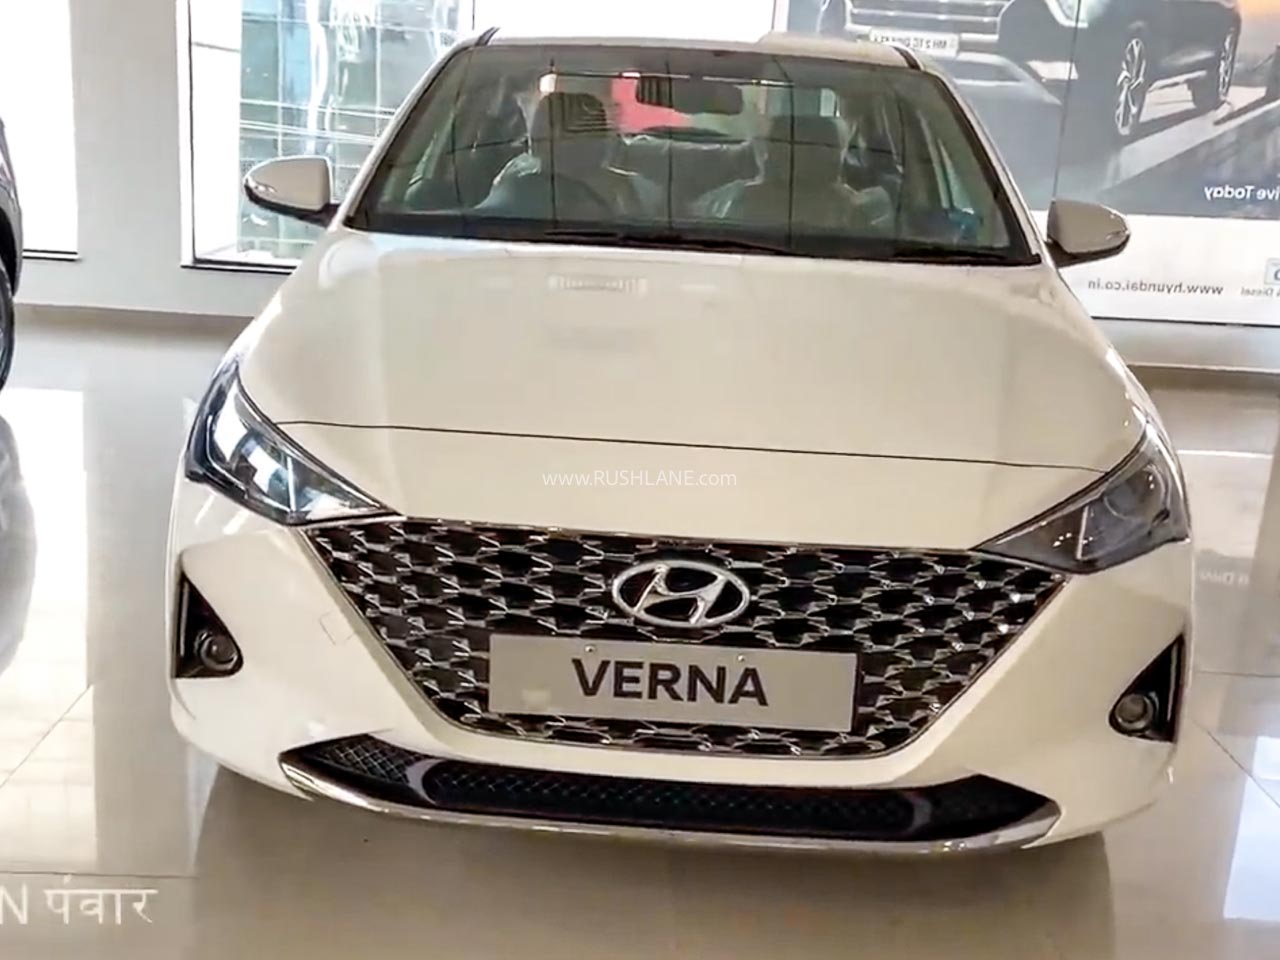 New Hyundai Verna 2020 Model